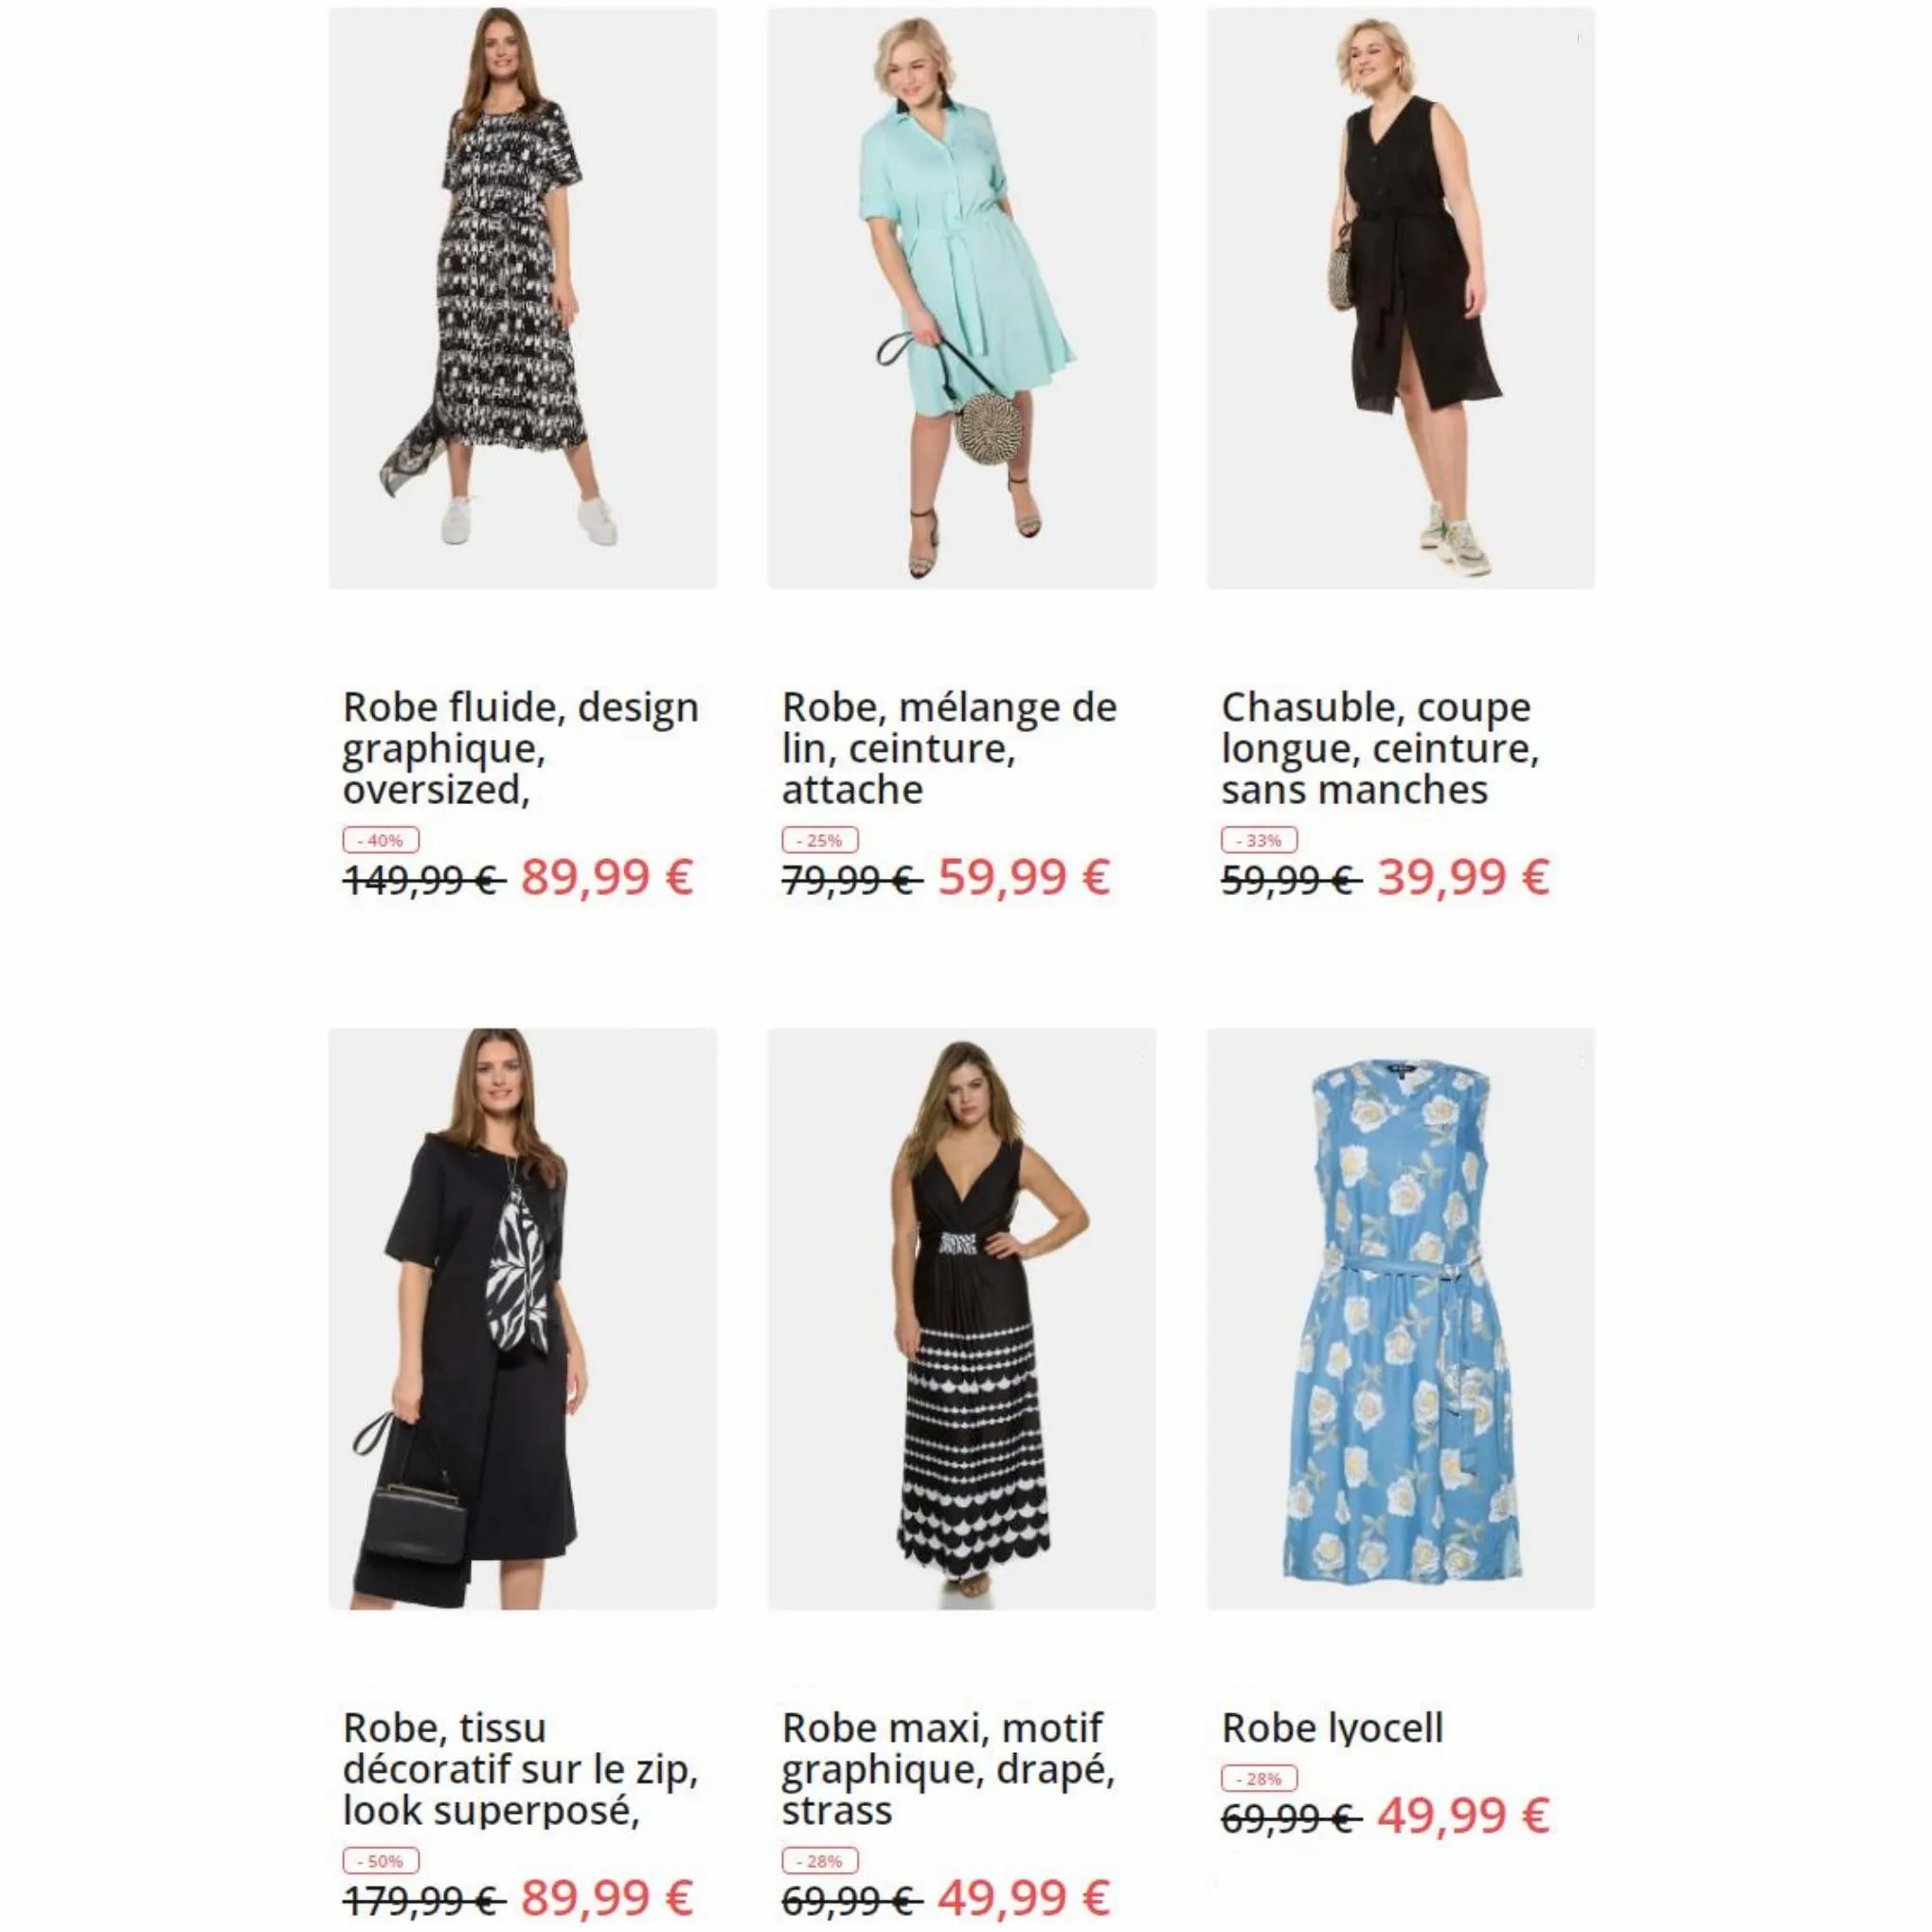 Catalogue Petits prix sur les robes, page 00002